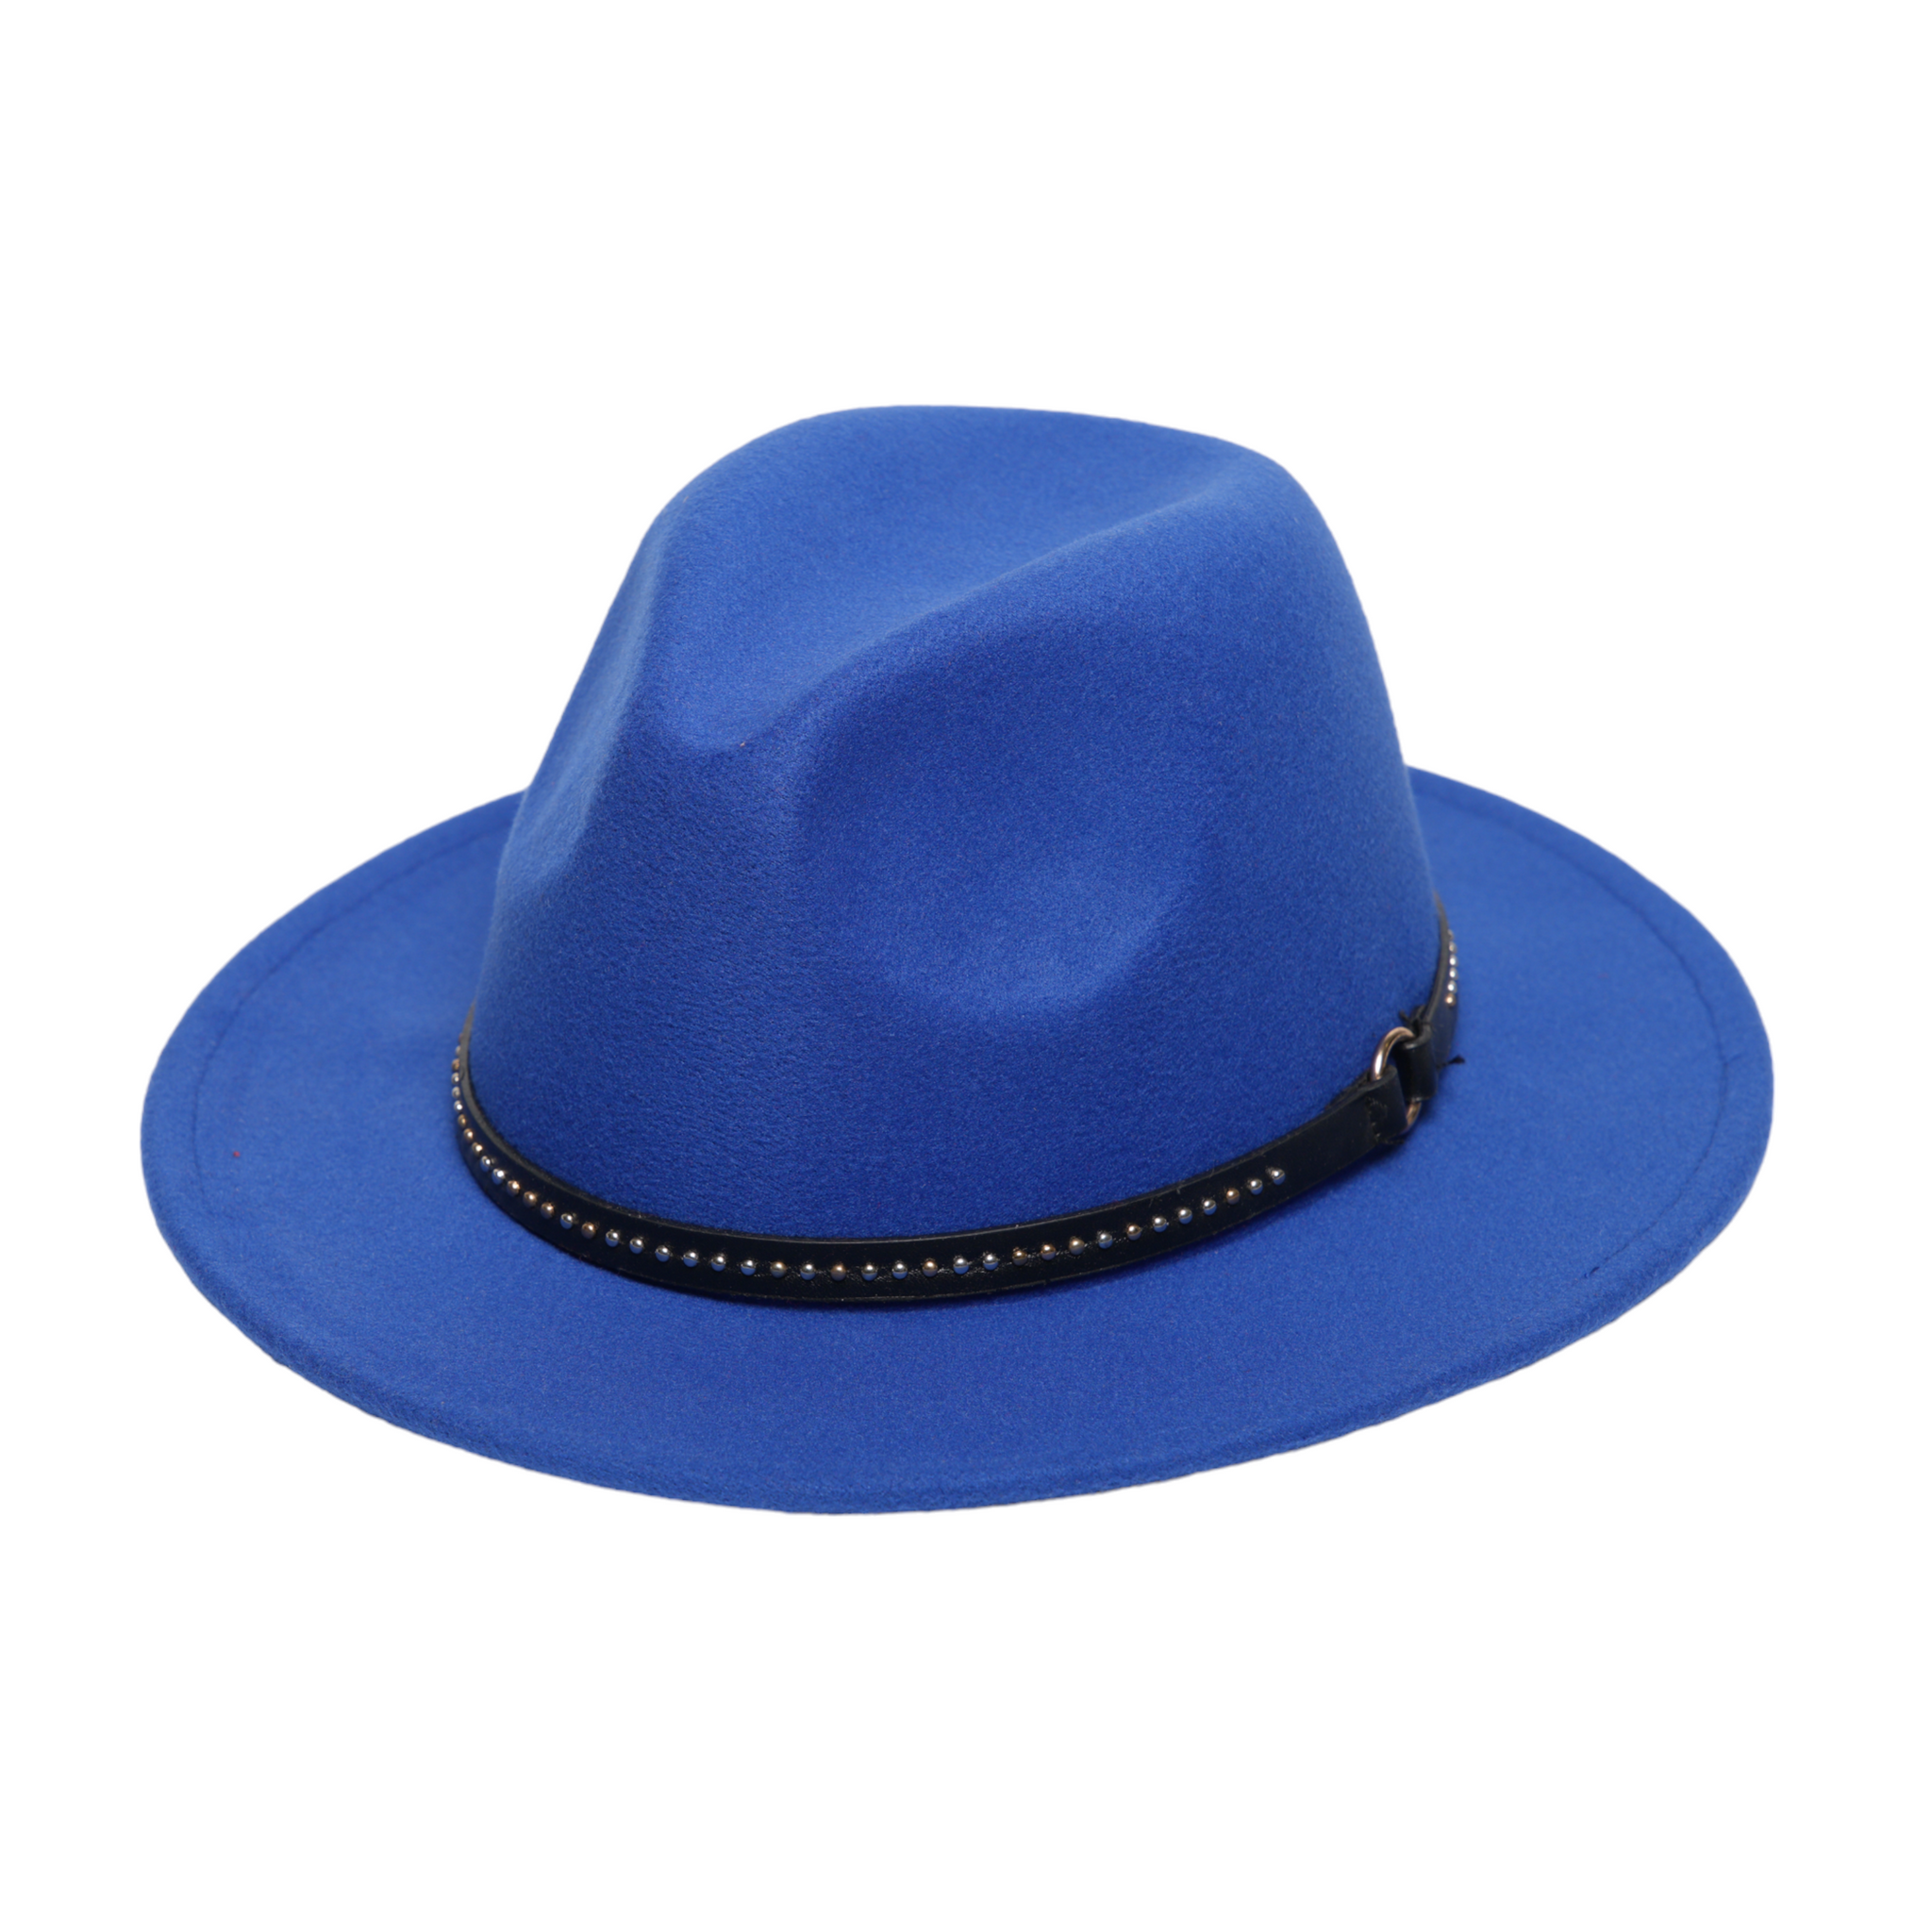 Chokore Fedora hat with Belt Band (Blue)